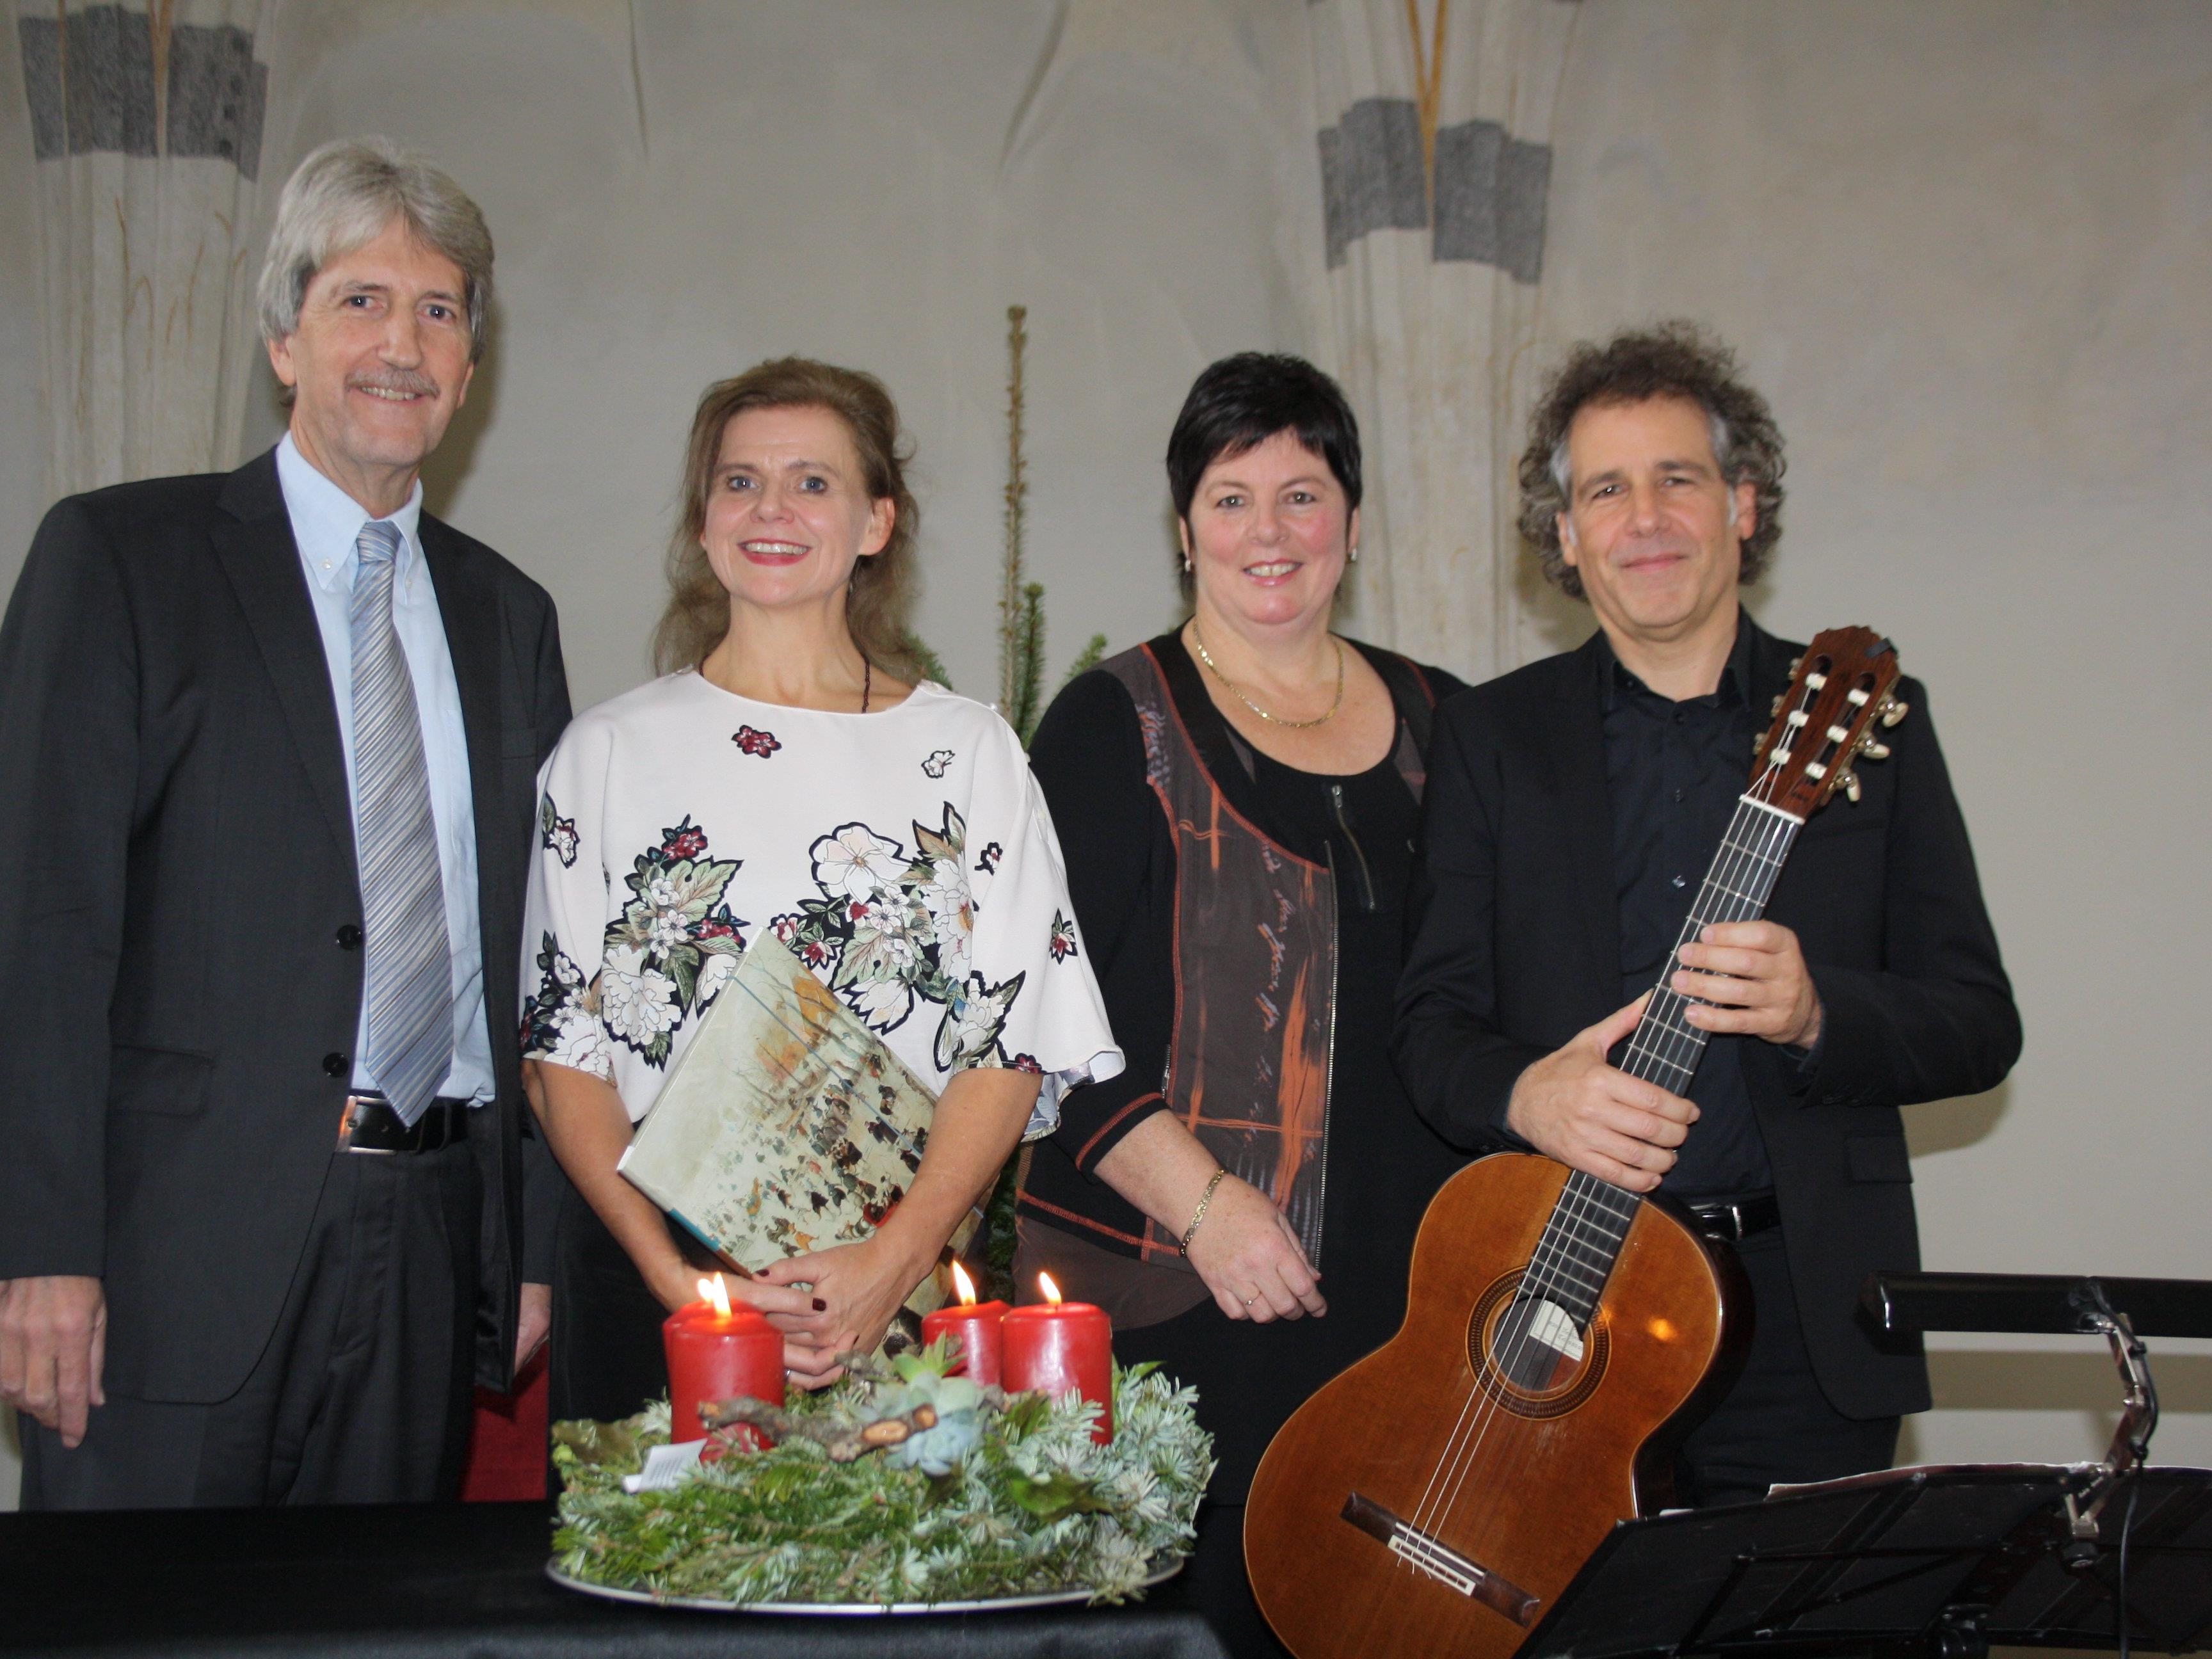 Schloss Hofener Advent: Manfred Obexer (Kulturausschuss), Renate Bauer (Rezitation), Petra Rührnschopf (Obfrau Kulturausschuss) und Alexander Swete (Gitarre).